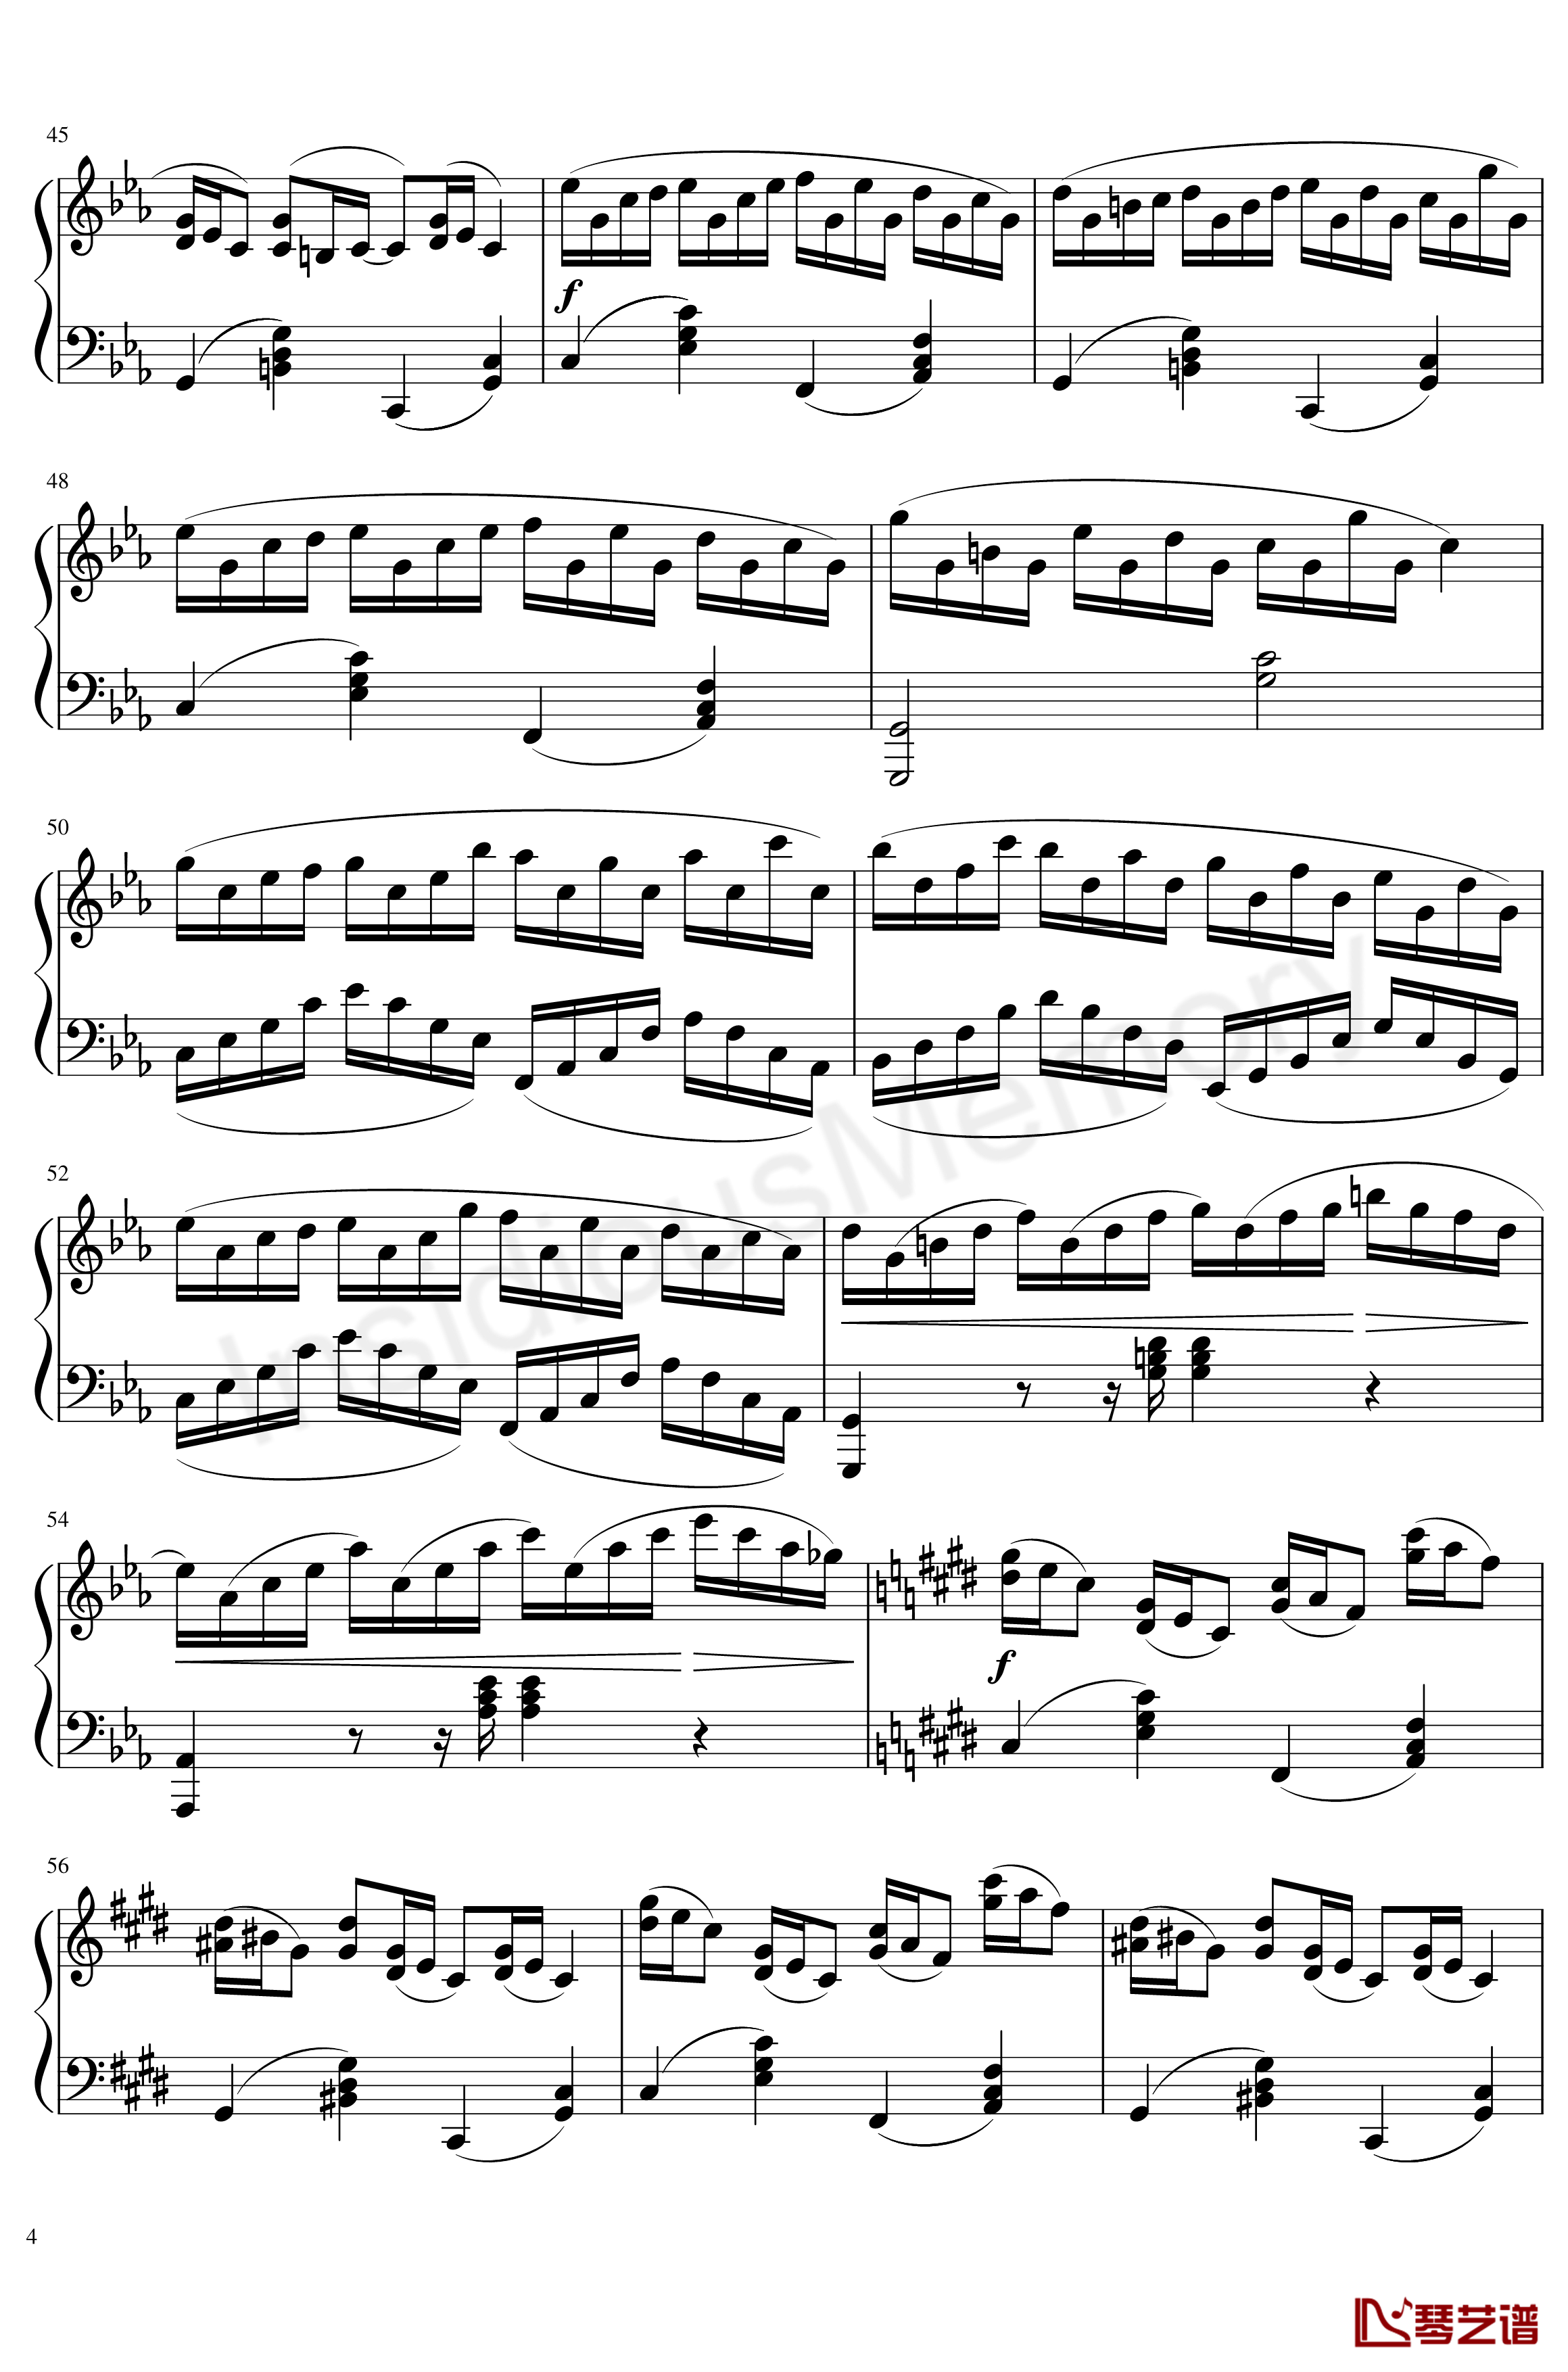 克罗地亚狂想曲钢琴谱-马克西姆-Maksim·Mrvica4